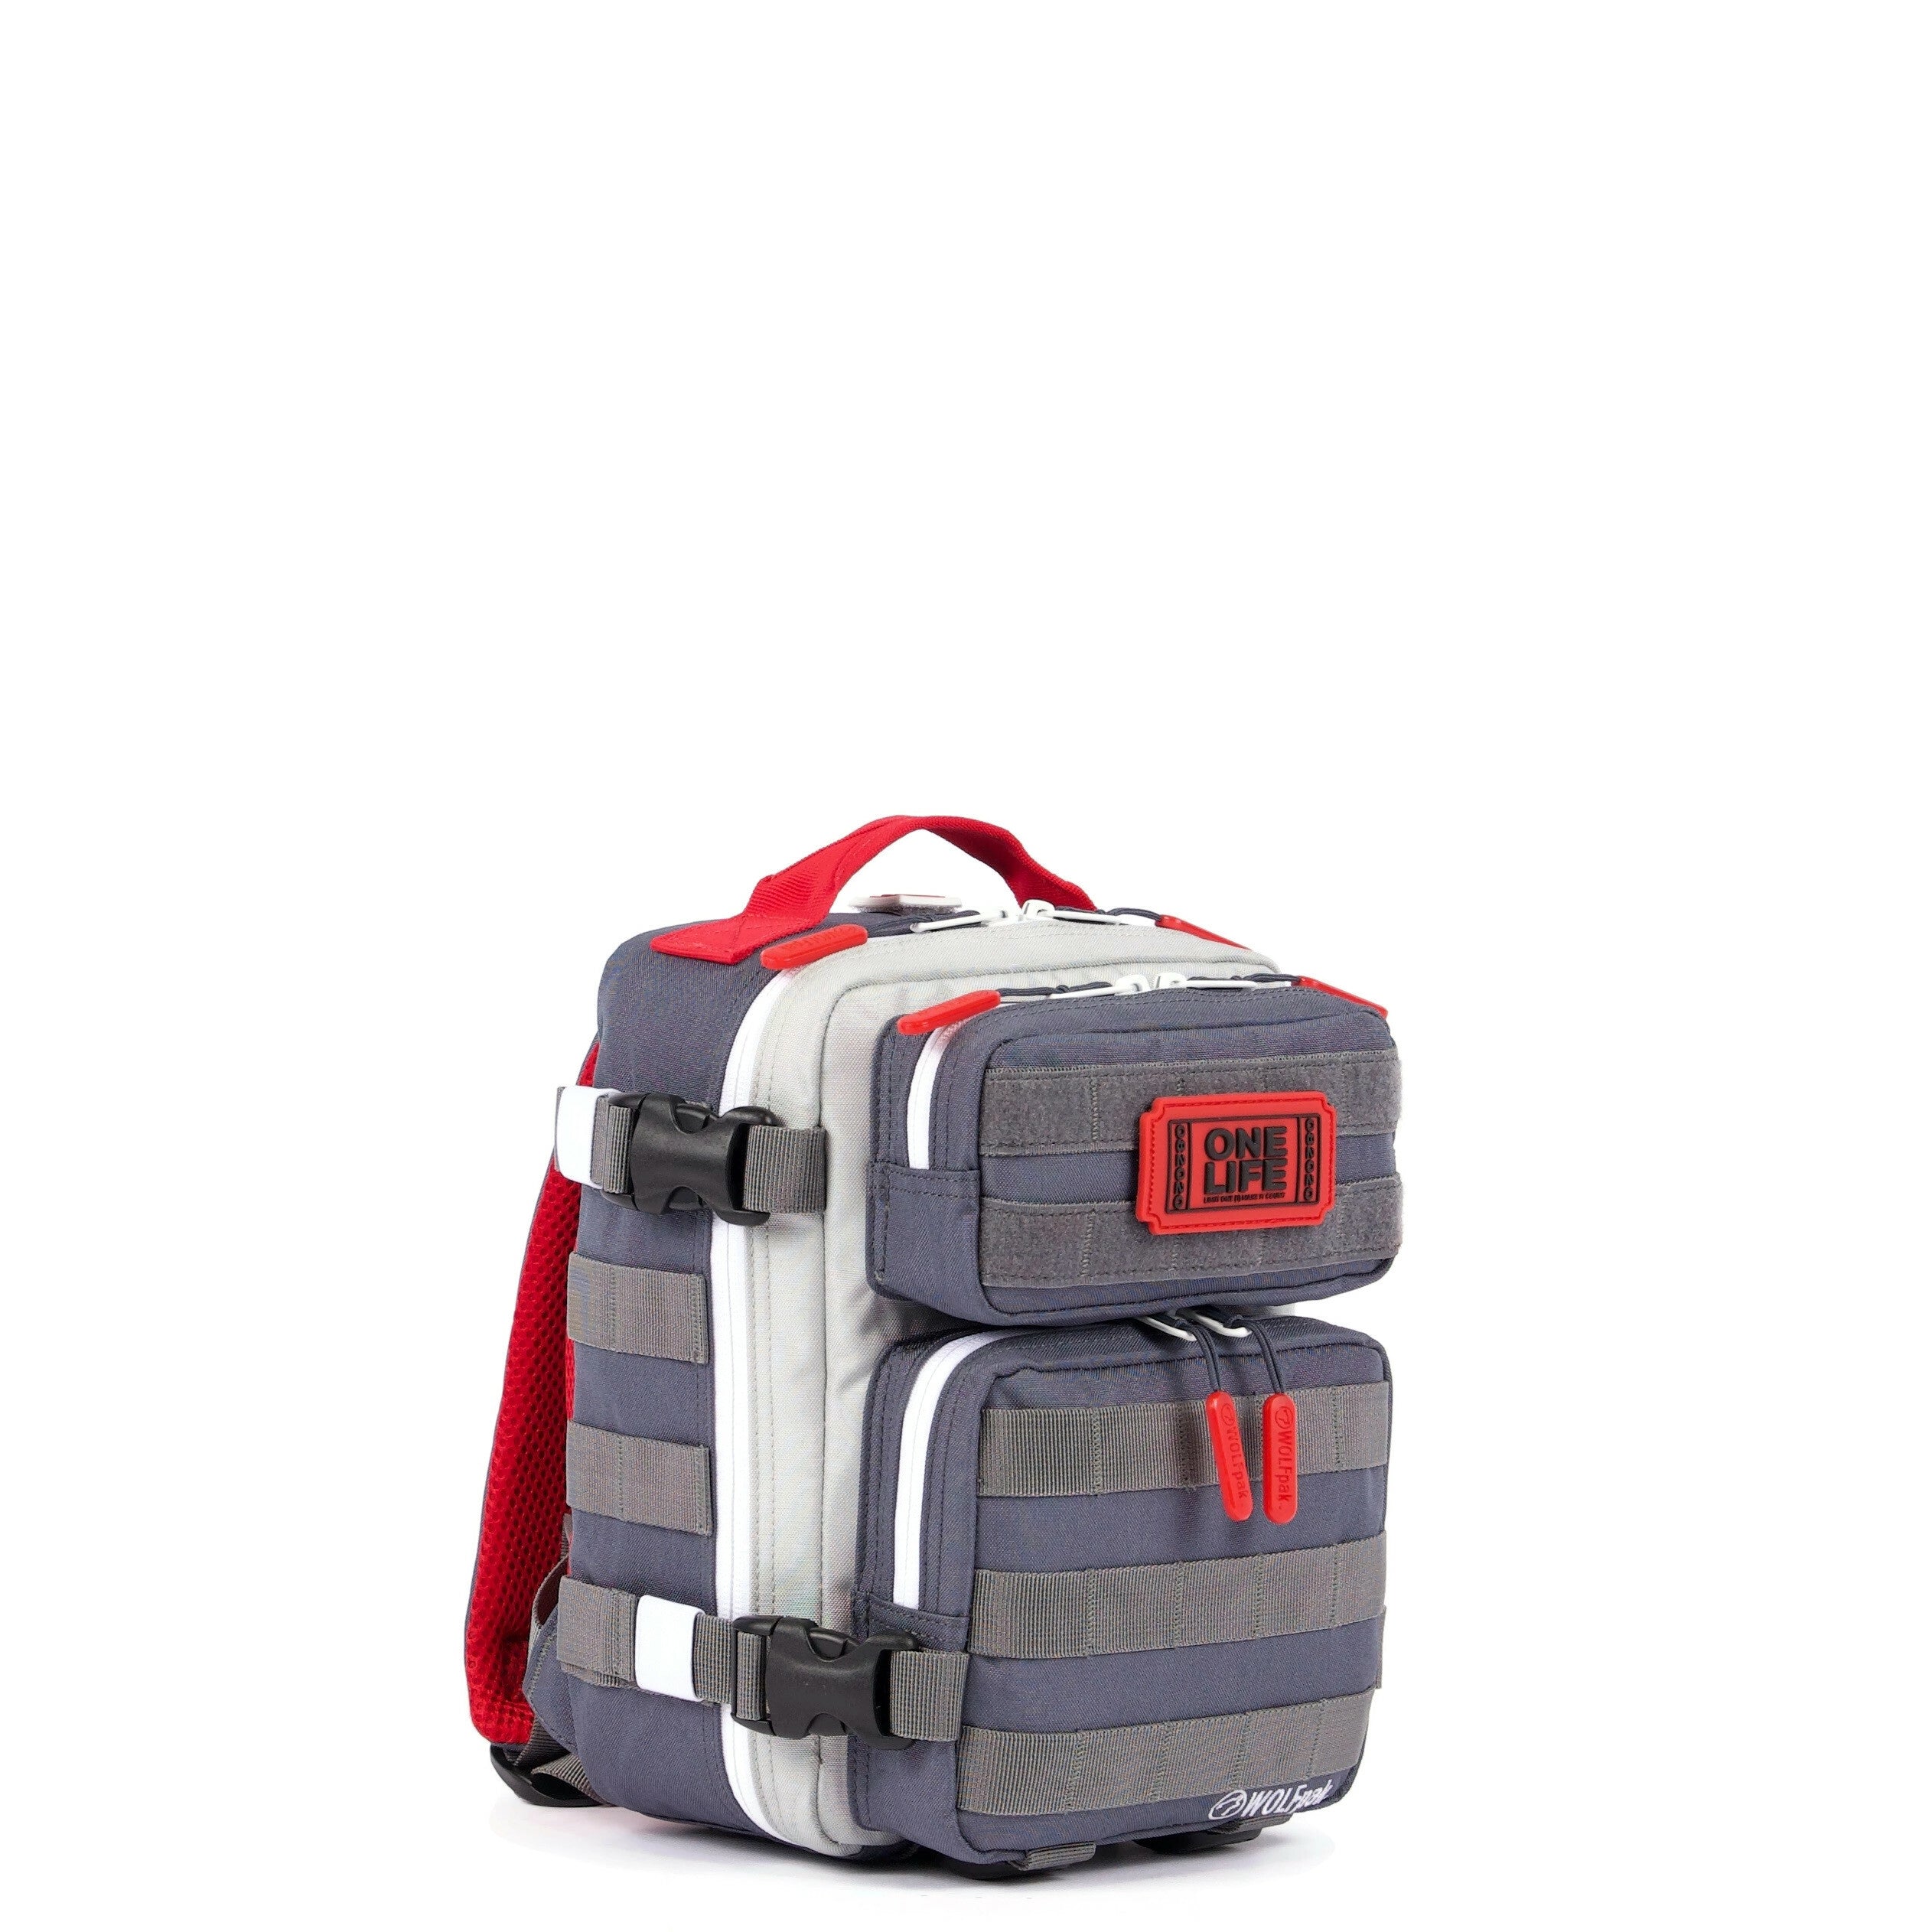 9L Backpack Mini One Life